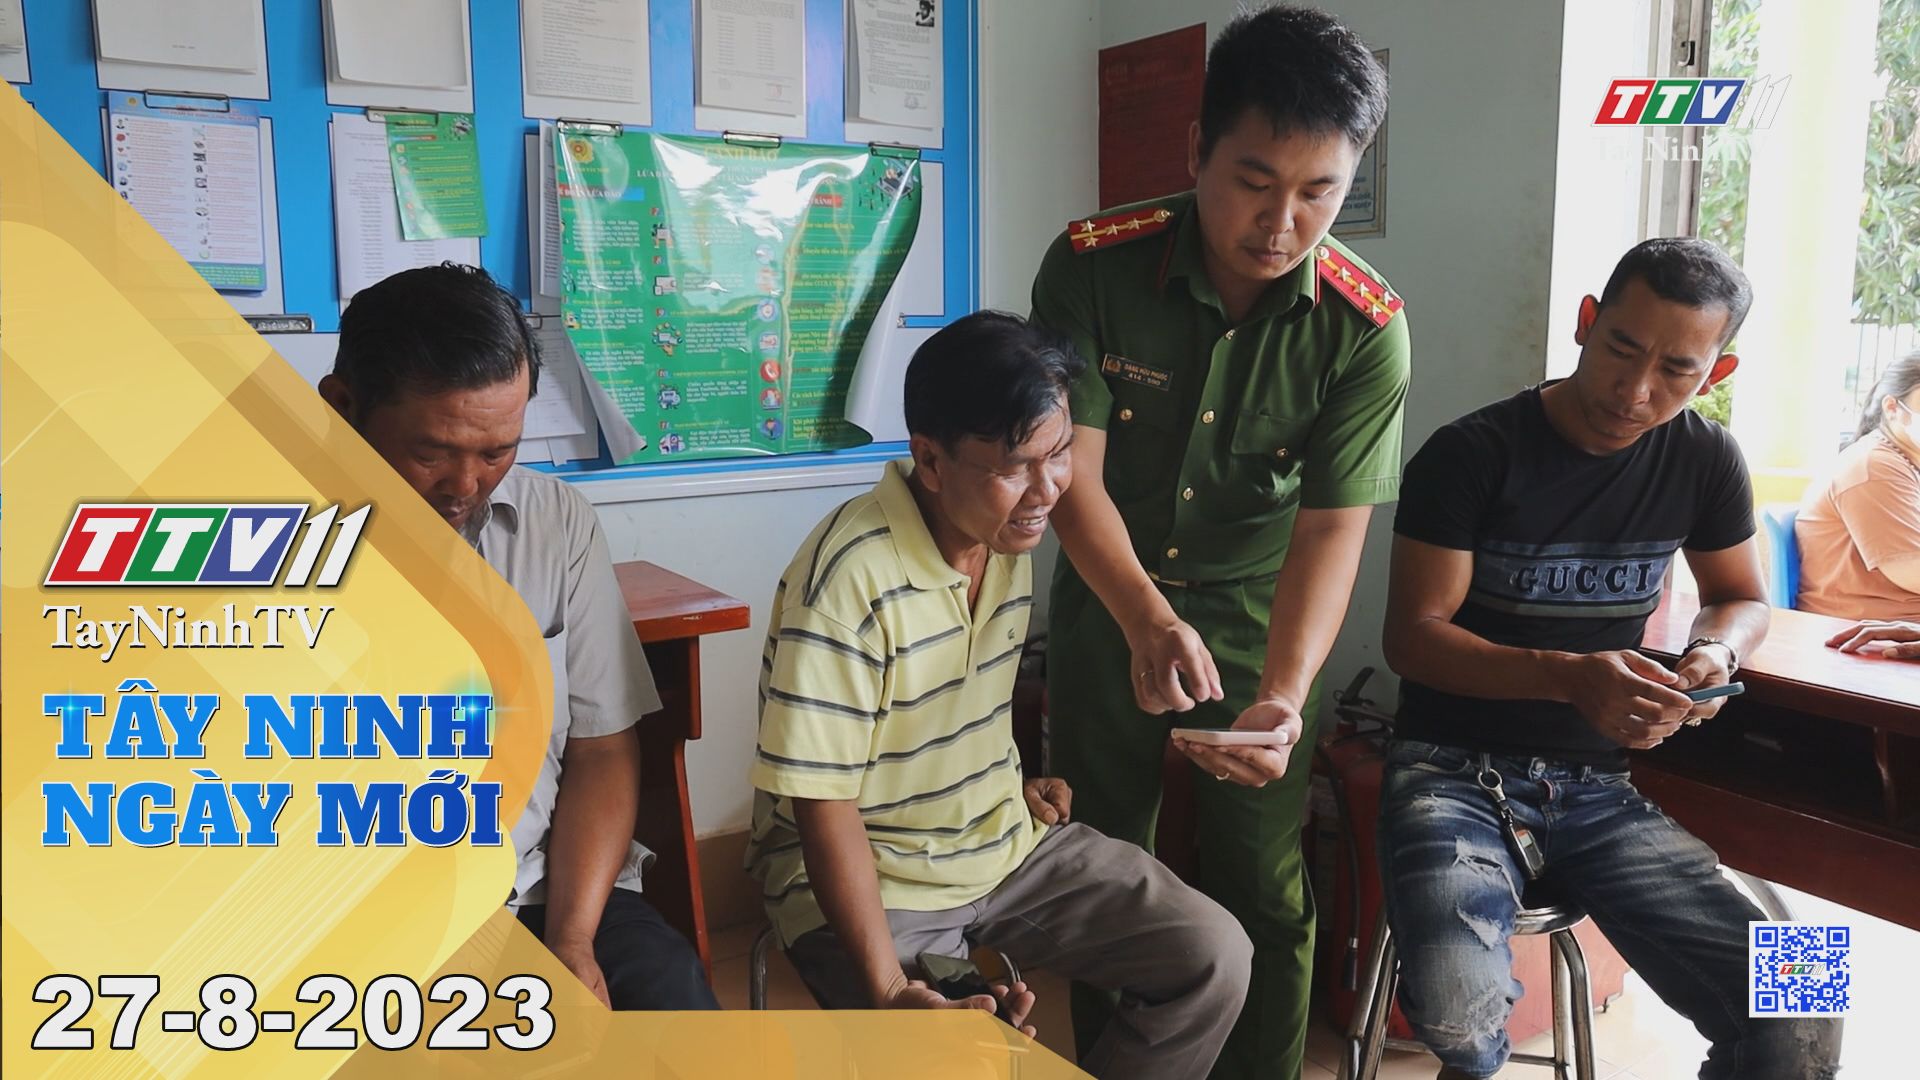 Tây Ninh ngày mới 27-8-2023 | Tin tức hôm nay | TayNinhTV